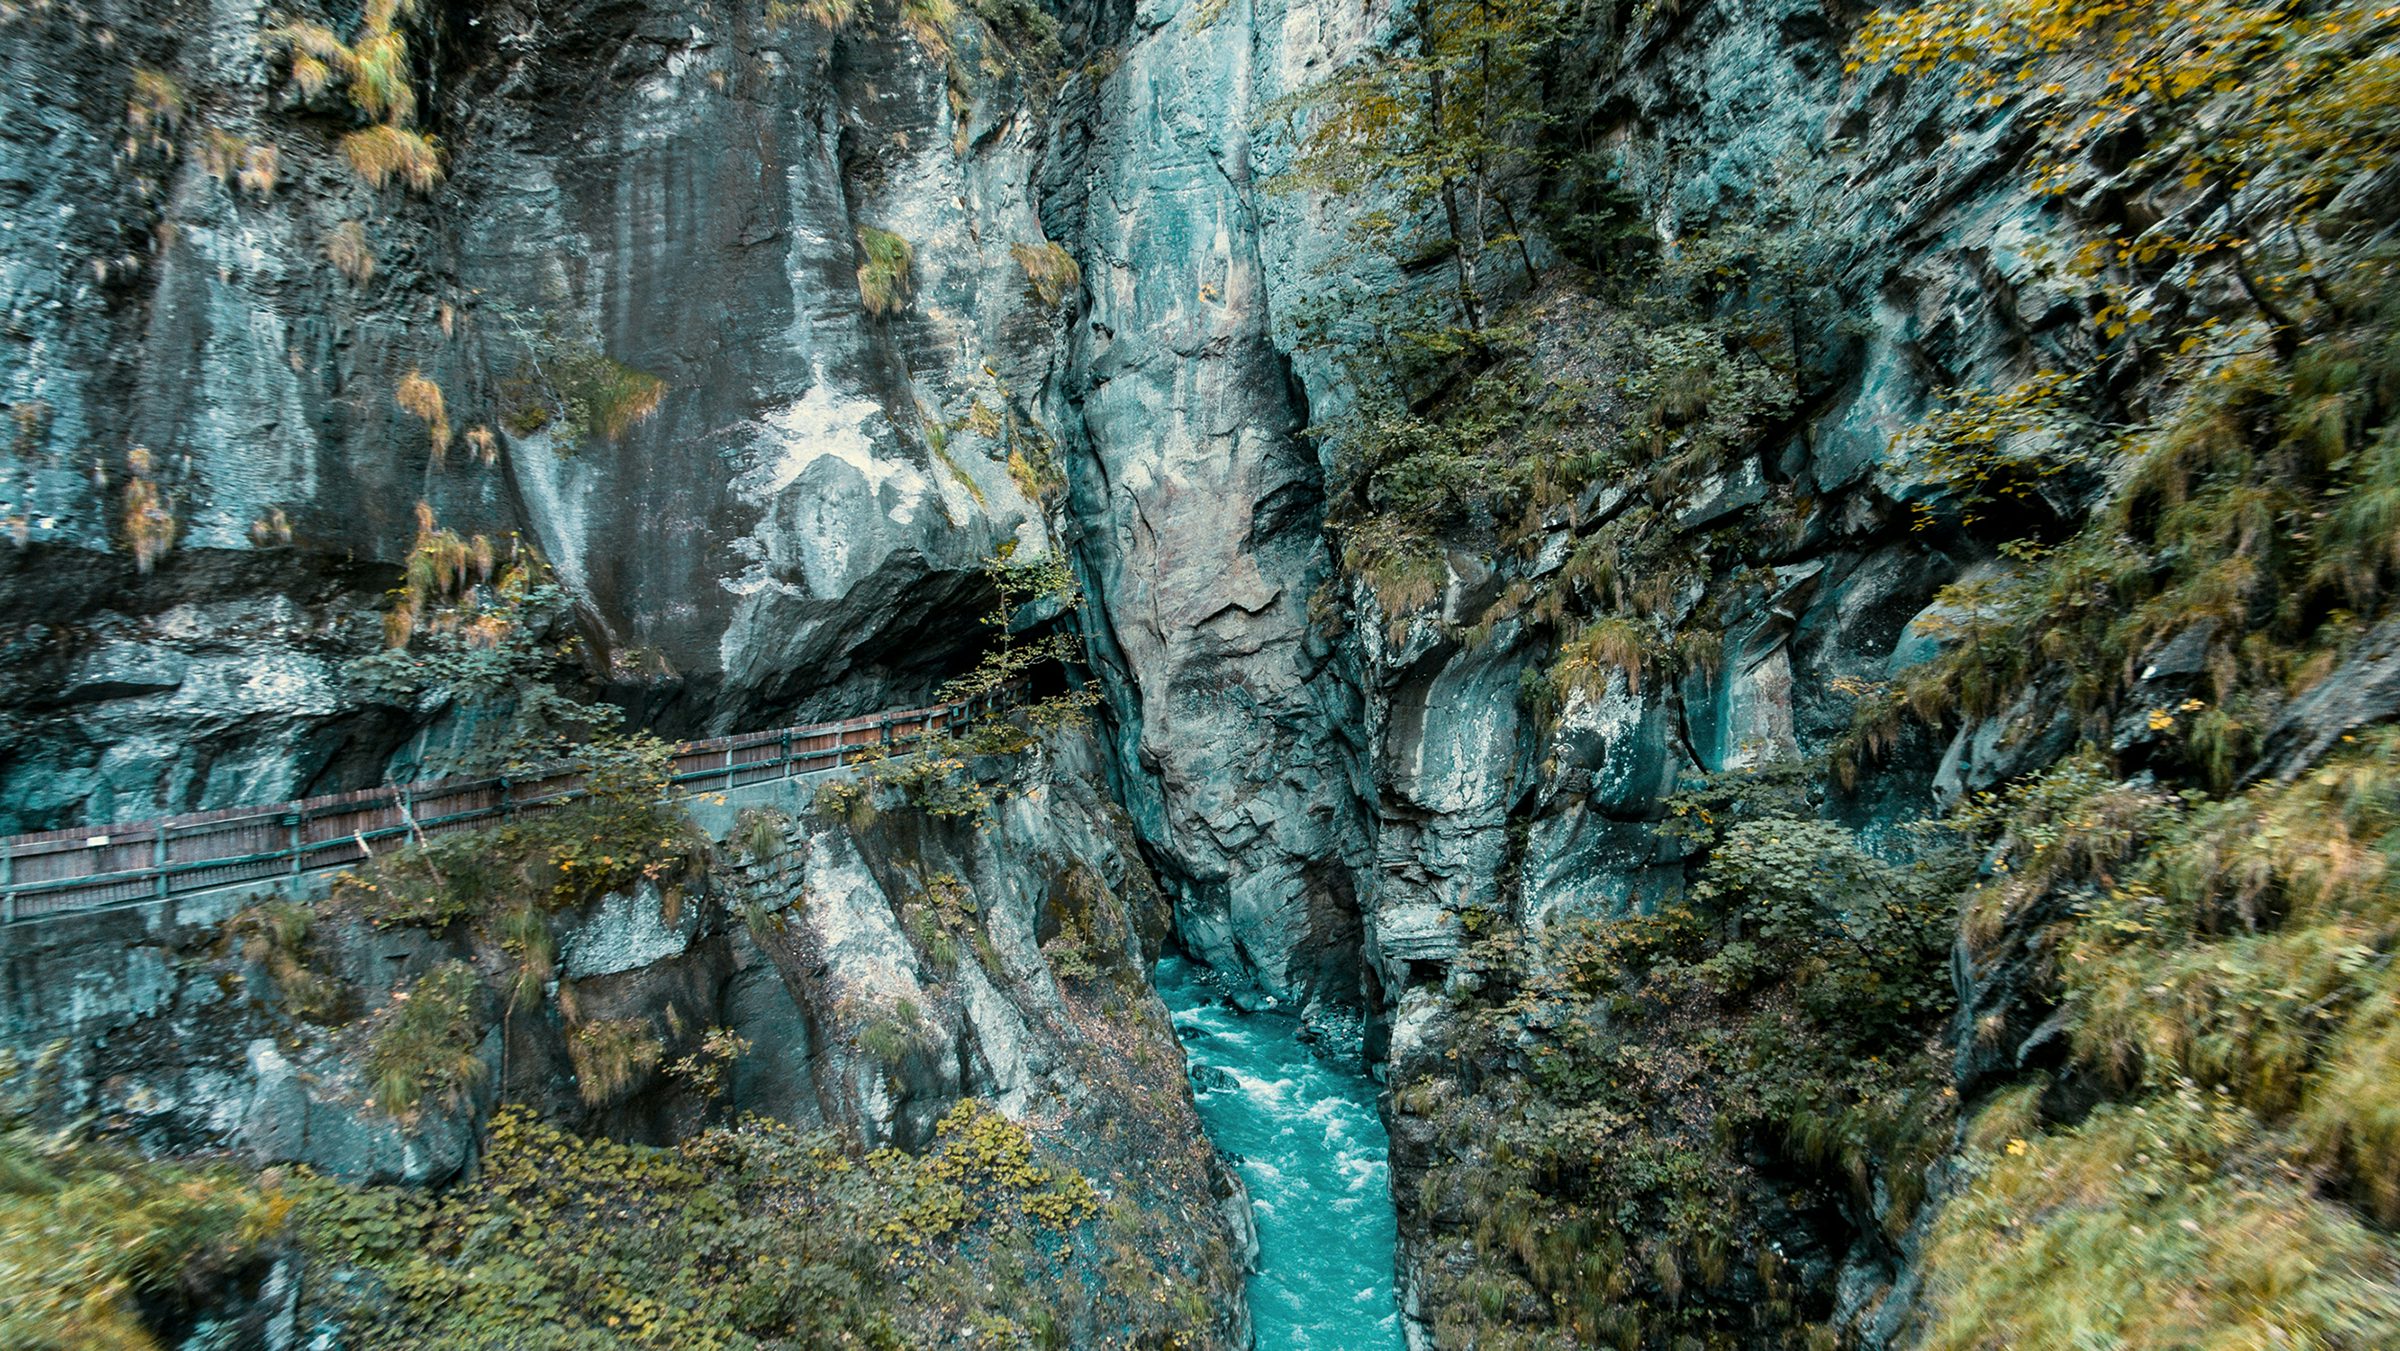 Sicht auf einen Felsen und die Taminaschlucht mit kristallklarem Wasser.